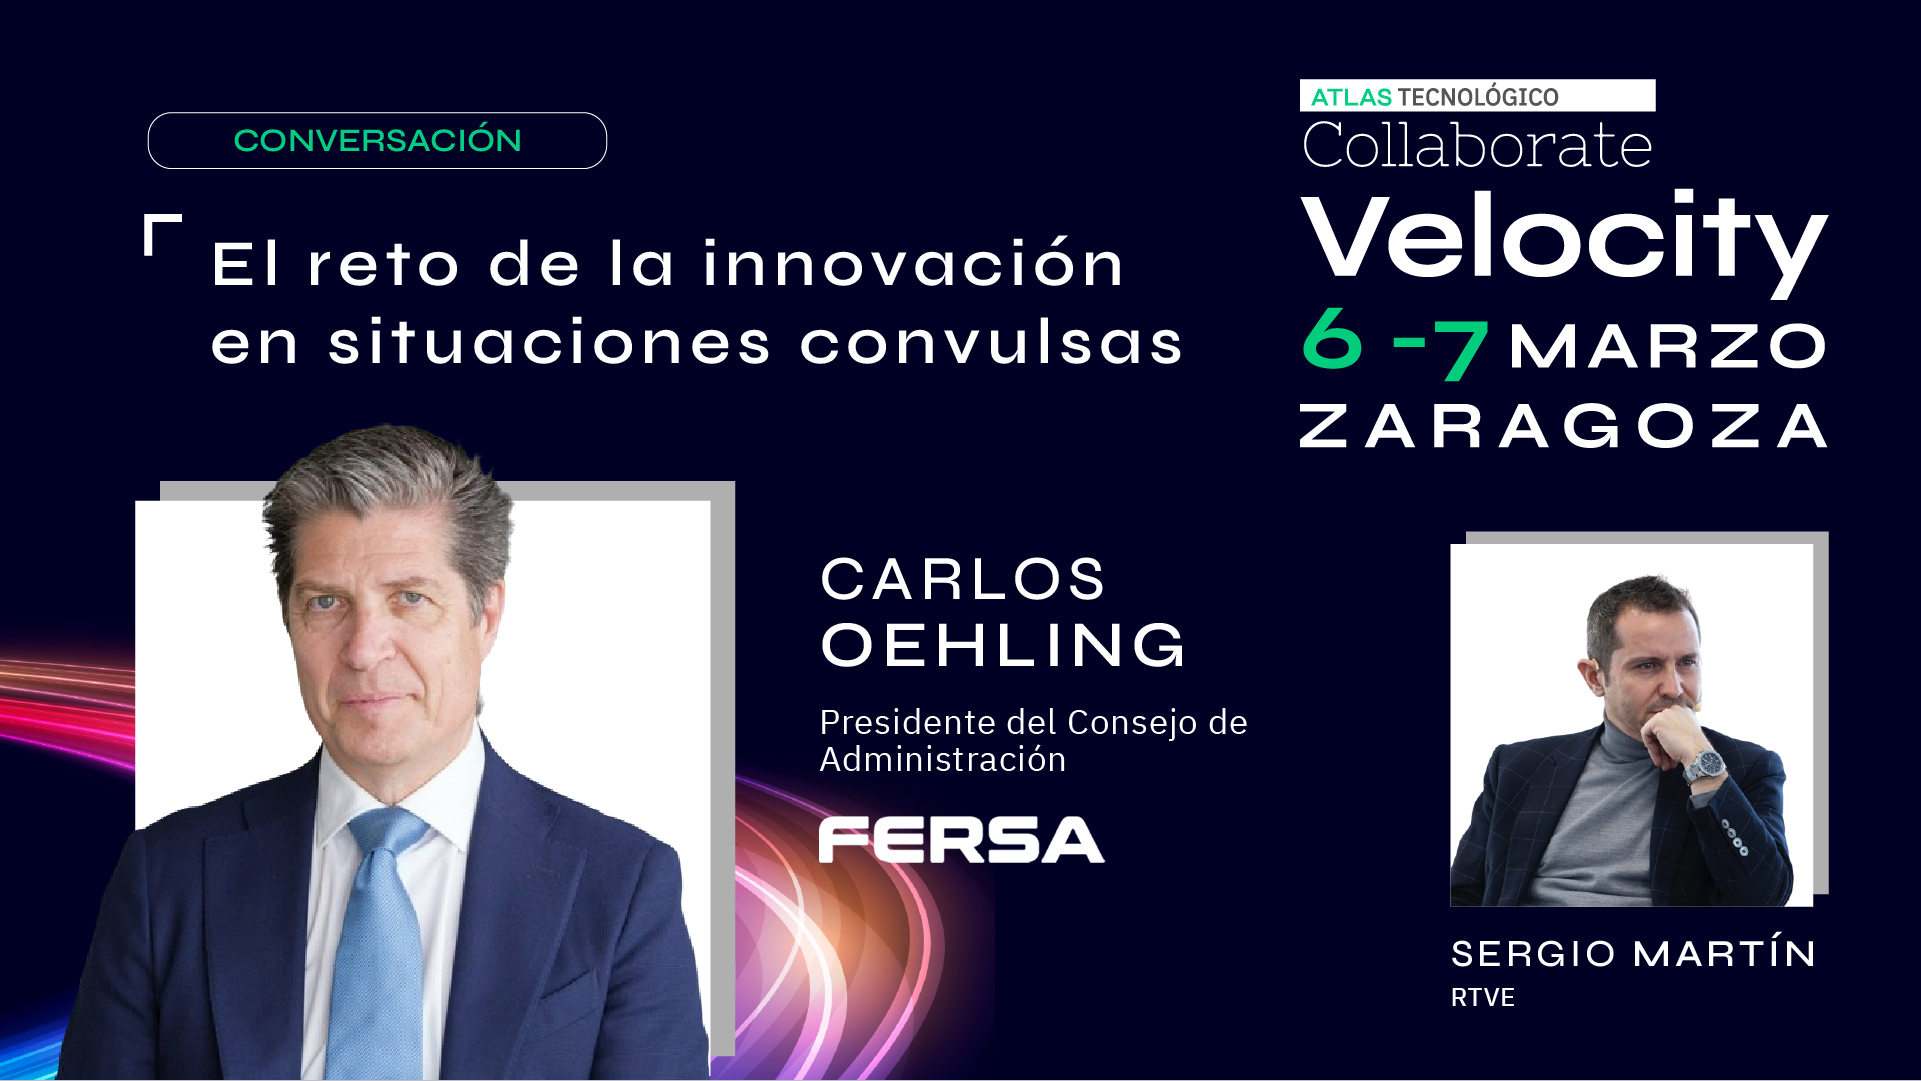 Carlos Oehling y la innovación de Fersa en circunstancias convulsas, para acelerar el Collaborate